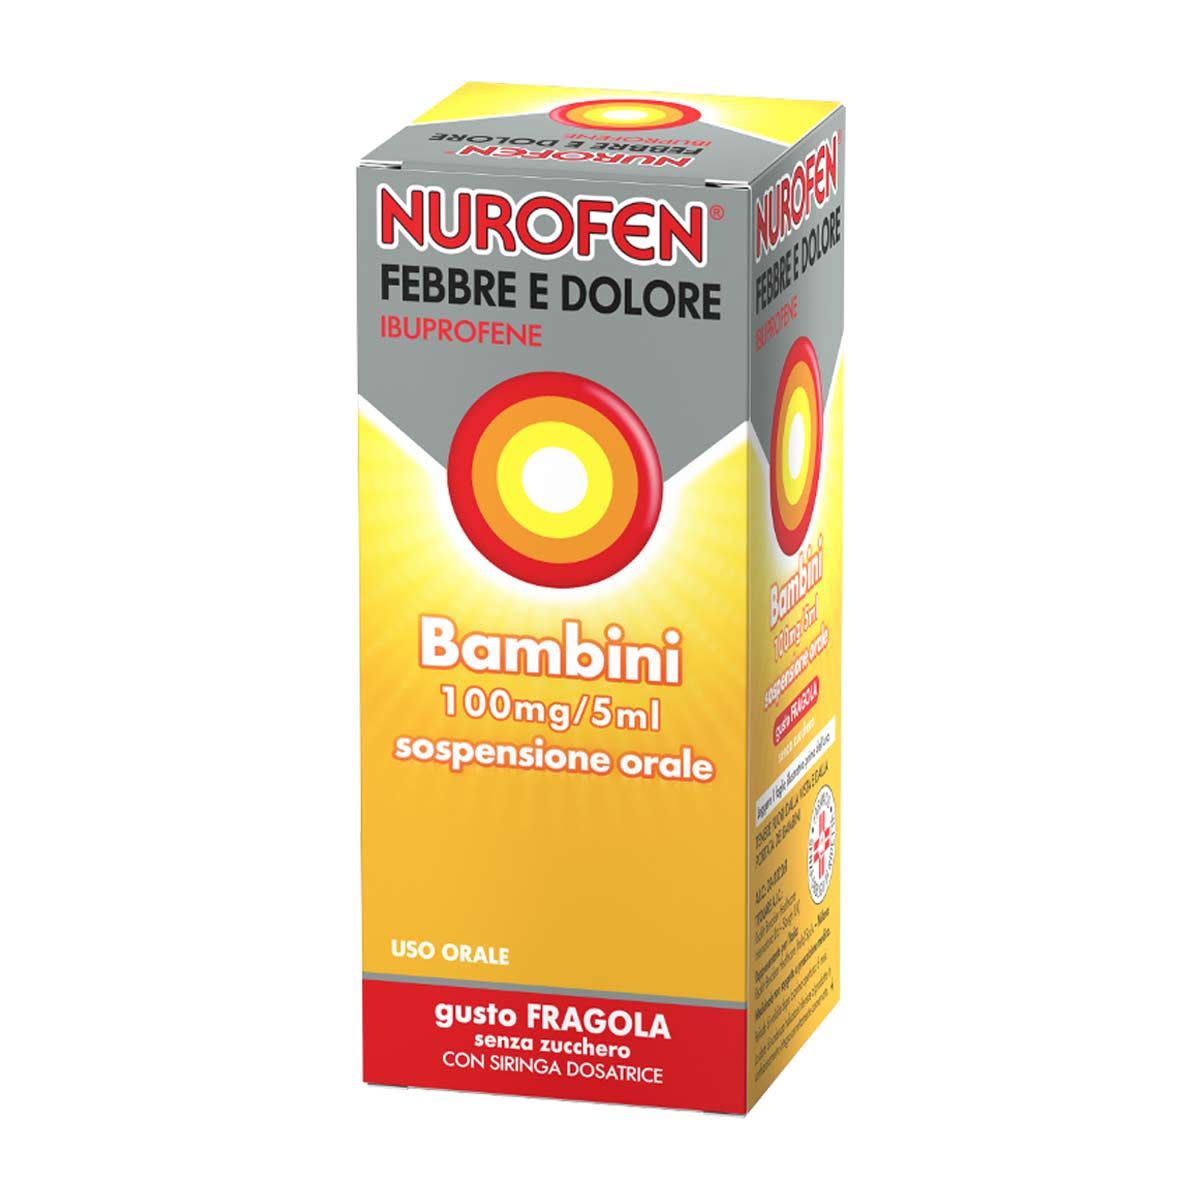 034102261 - Nurofen Febbre Dolore Sciroppo Ibuprofene 100mg/5ml gusto Fragola 150ml - 7804453_2.jpg